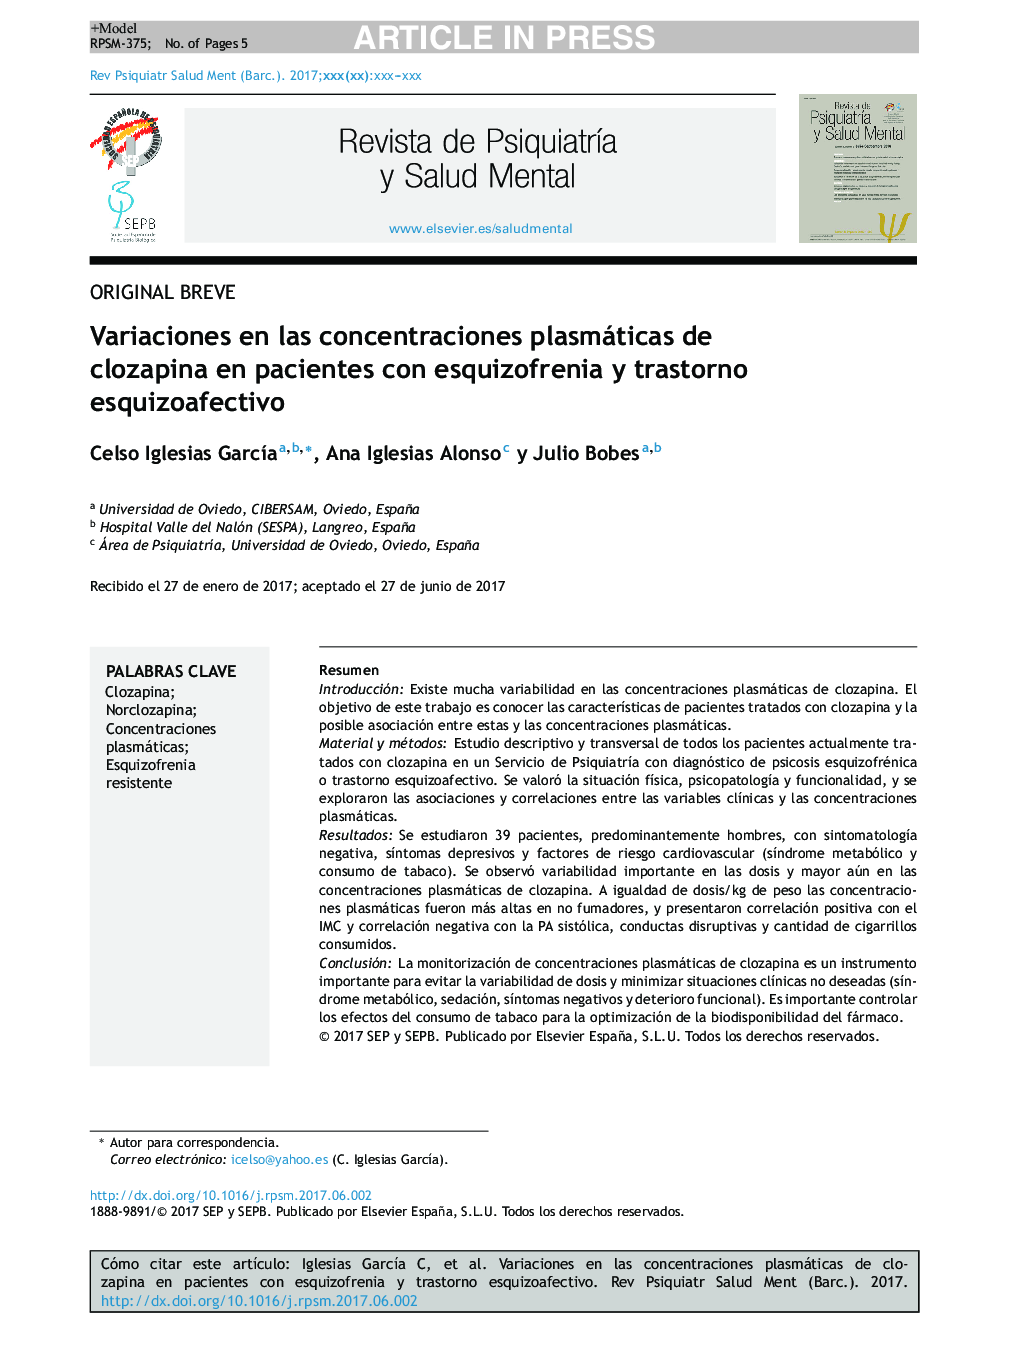 تغییرات در غلظت پلاسمایی کلوزاپین در بیماران مبتلا به اسکیزوفرنی و اختلال اسکیزوفرکتیک 